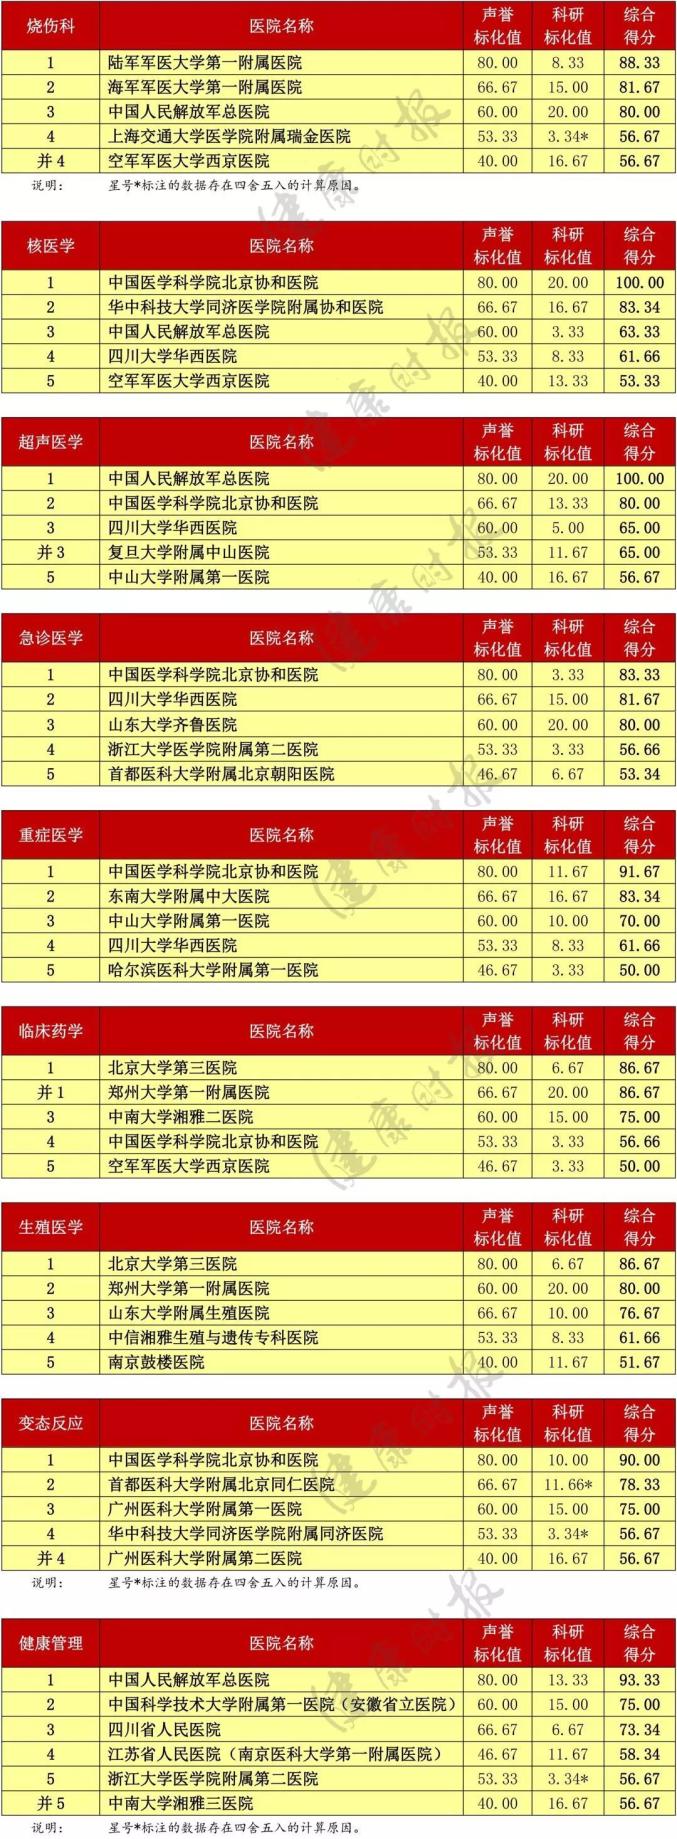 西安男科医院排行榜_陕西8大医院排名:西安一城占6个名额,咸阳和延安各有一家上榜